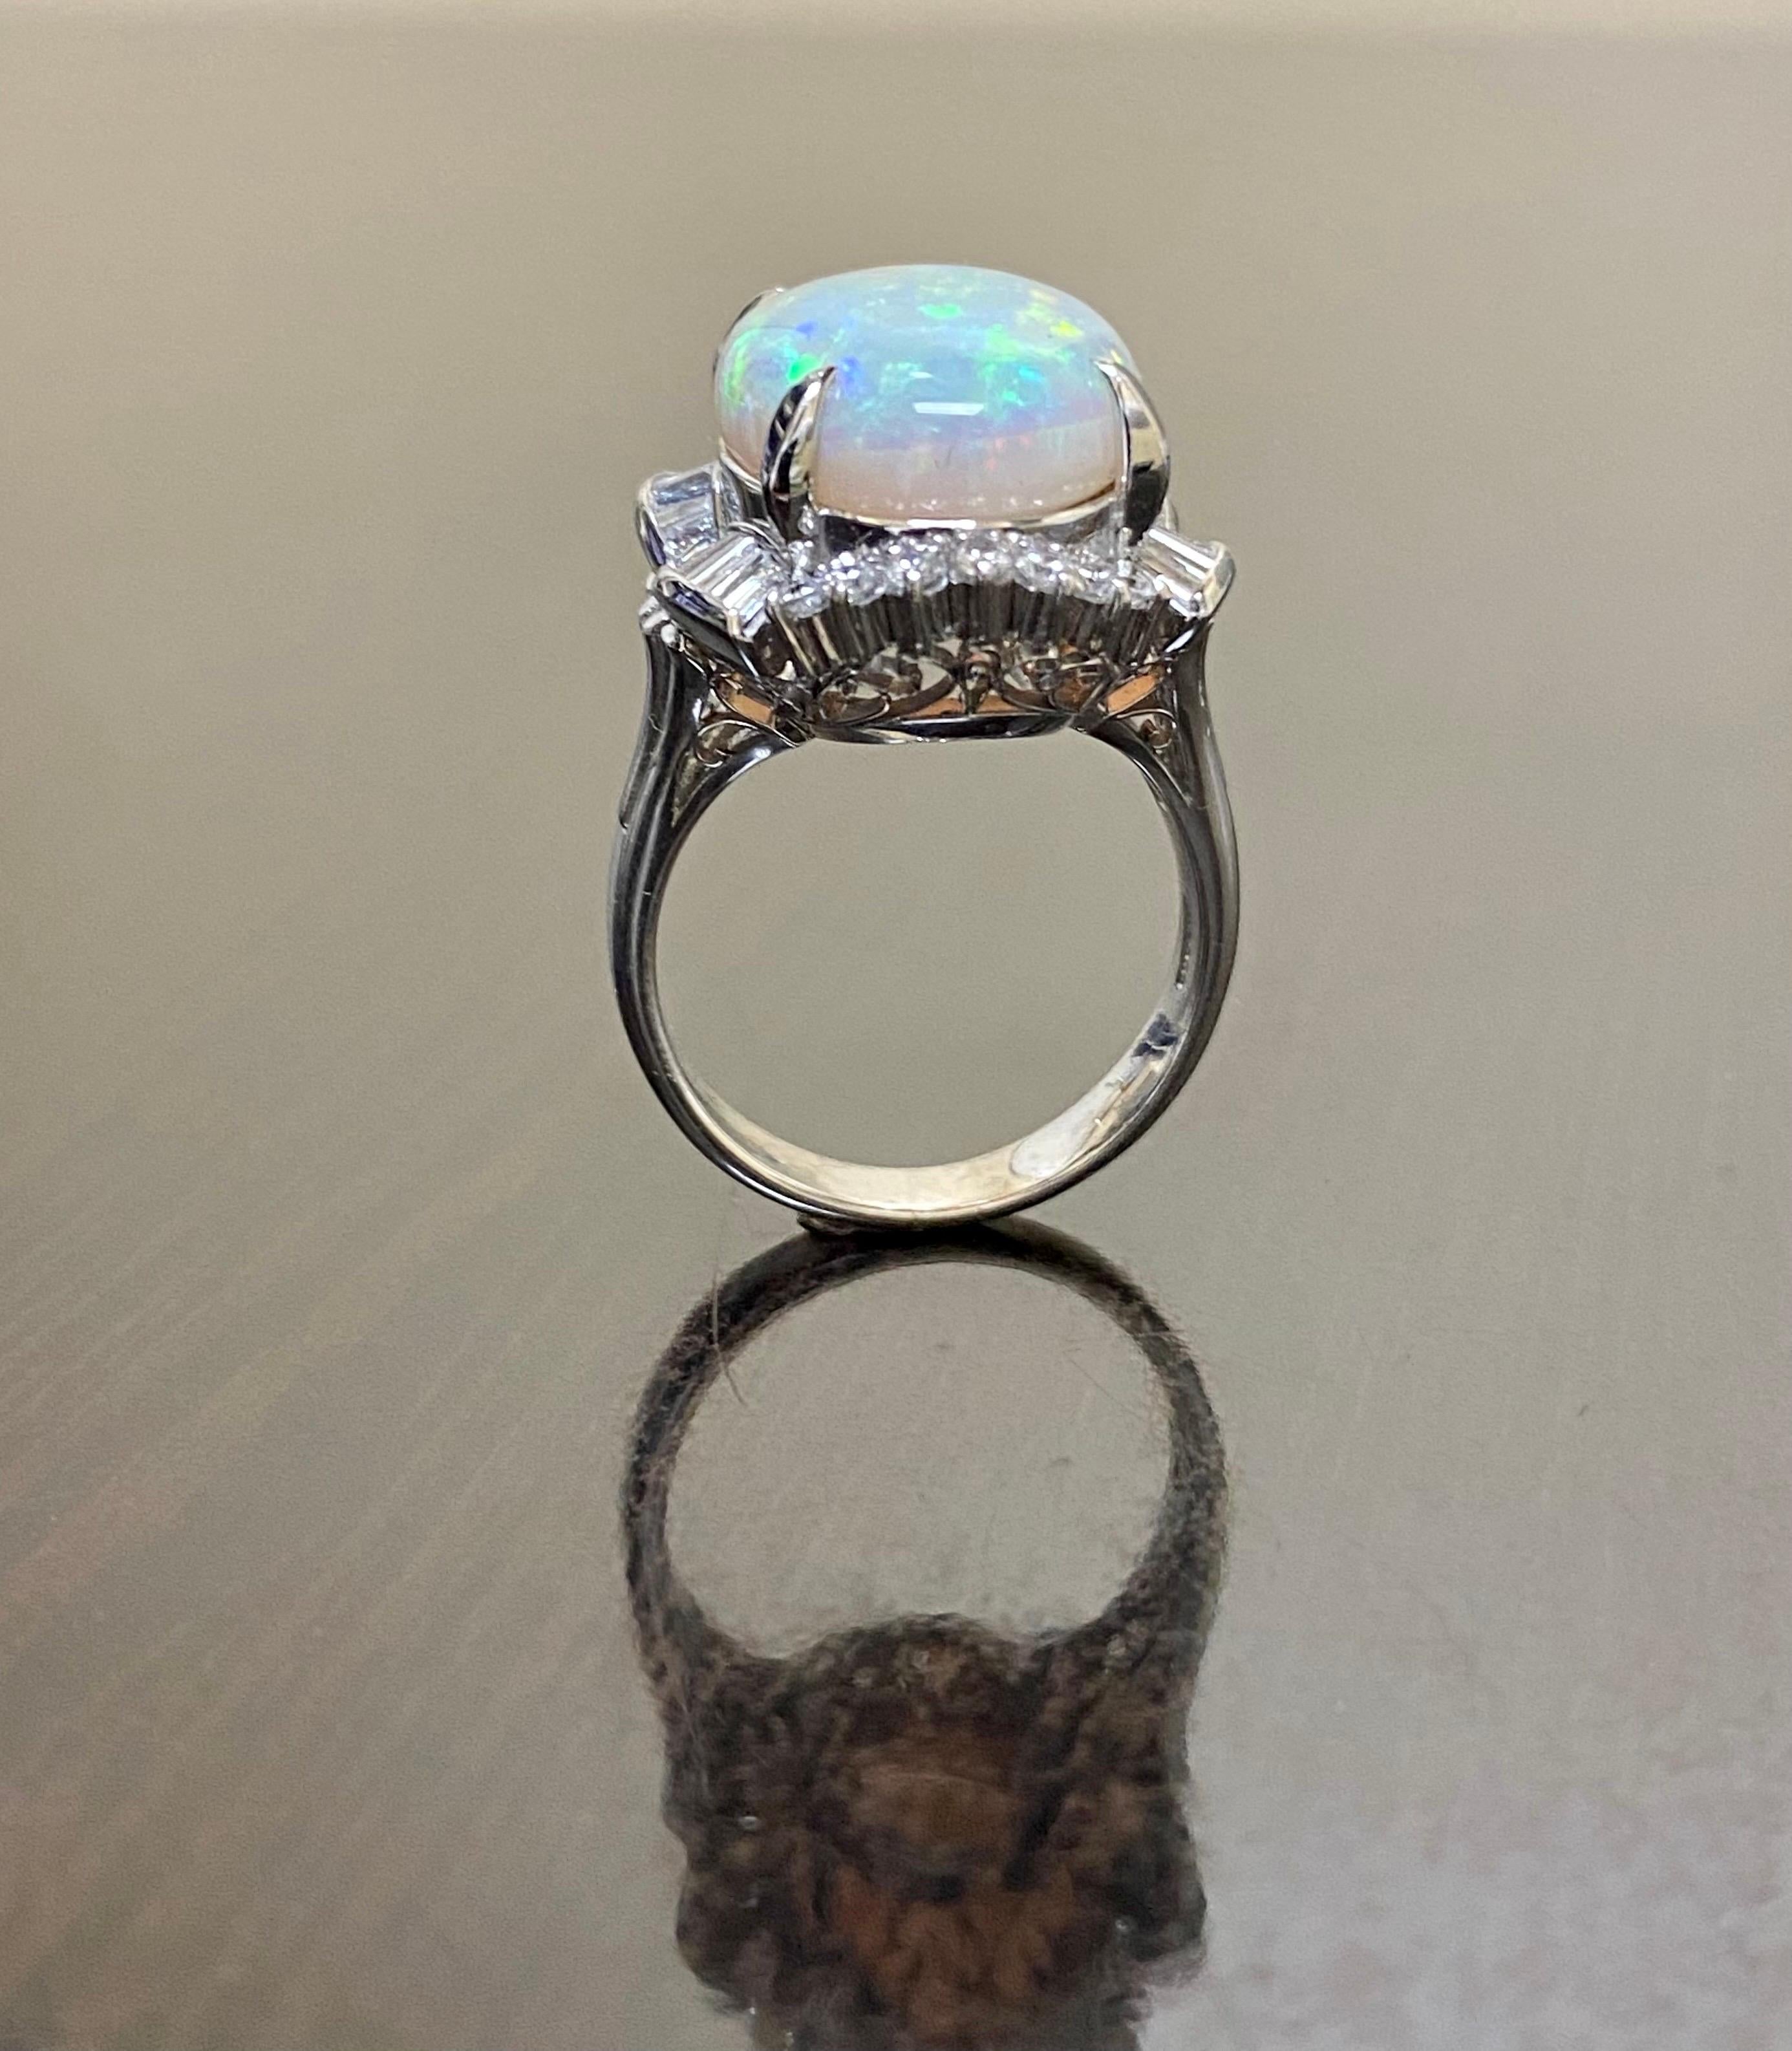 Collection/One Designs

Notre dernier design ! Une élégante et brillante opale australienne de 10,77 carats, entièrement fabriquée à la main, entourée de magnifiques diamants ronds et baguettes dans une monture en platine.

Métal - 90 % de platine,